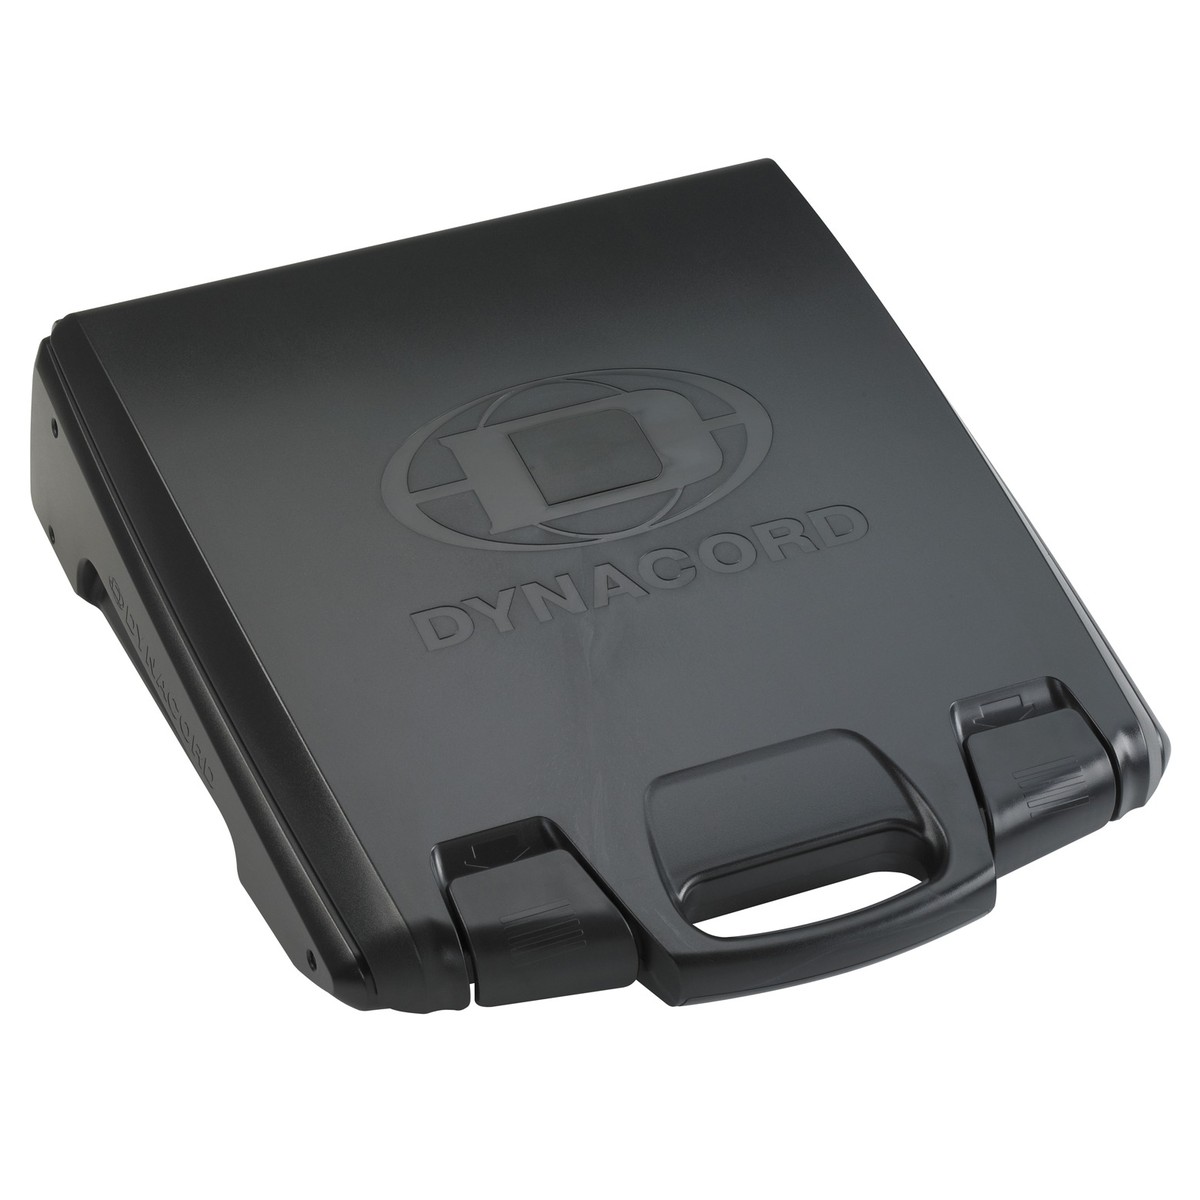 DYNACORD POWERMATE 1000-3 MIXER ANALOGICO AMPLIFICATO CON INTERFACCIA USB E DOPPI EFFETTI STEREO 6